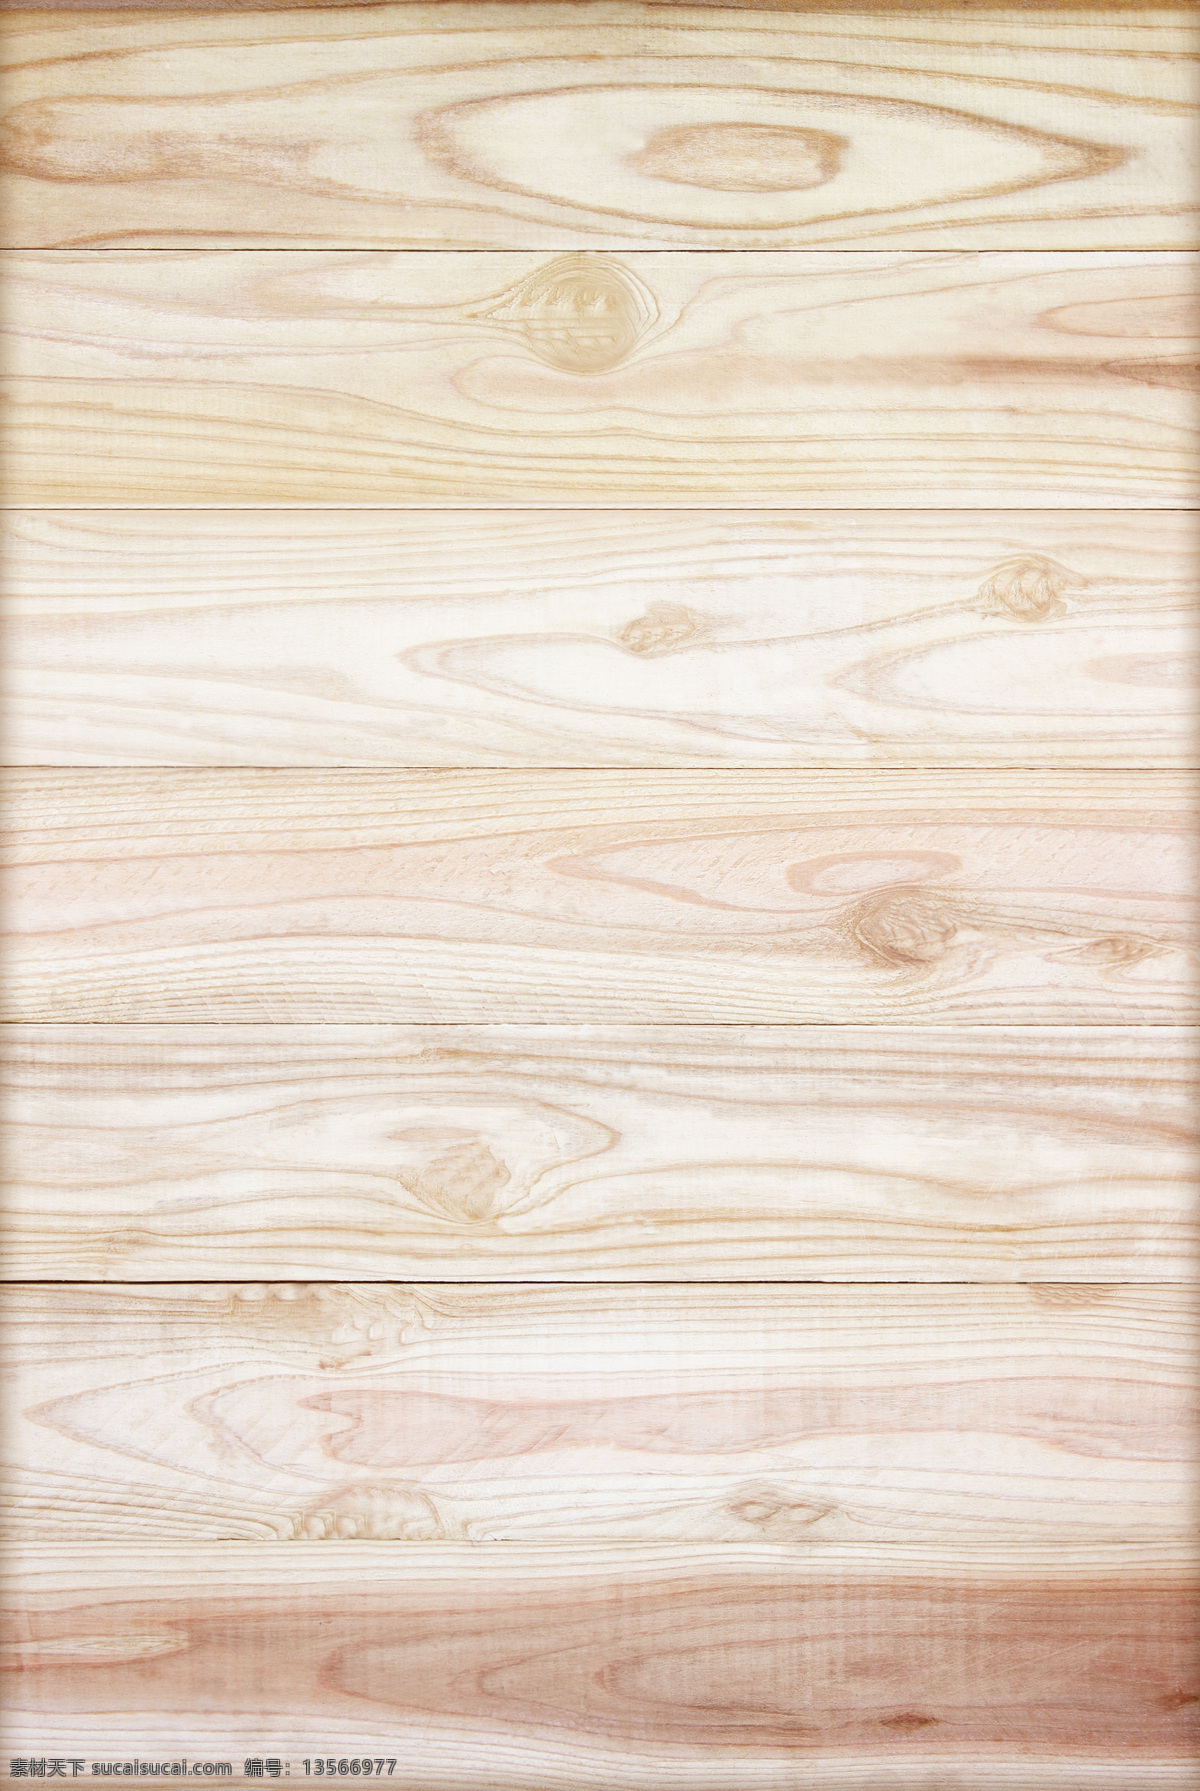 拼接 木纹 背景 图 堆叠木纹 高清木纹 室内设计 木纹纹理 木质纹理 地板 木头 木板背景